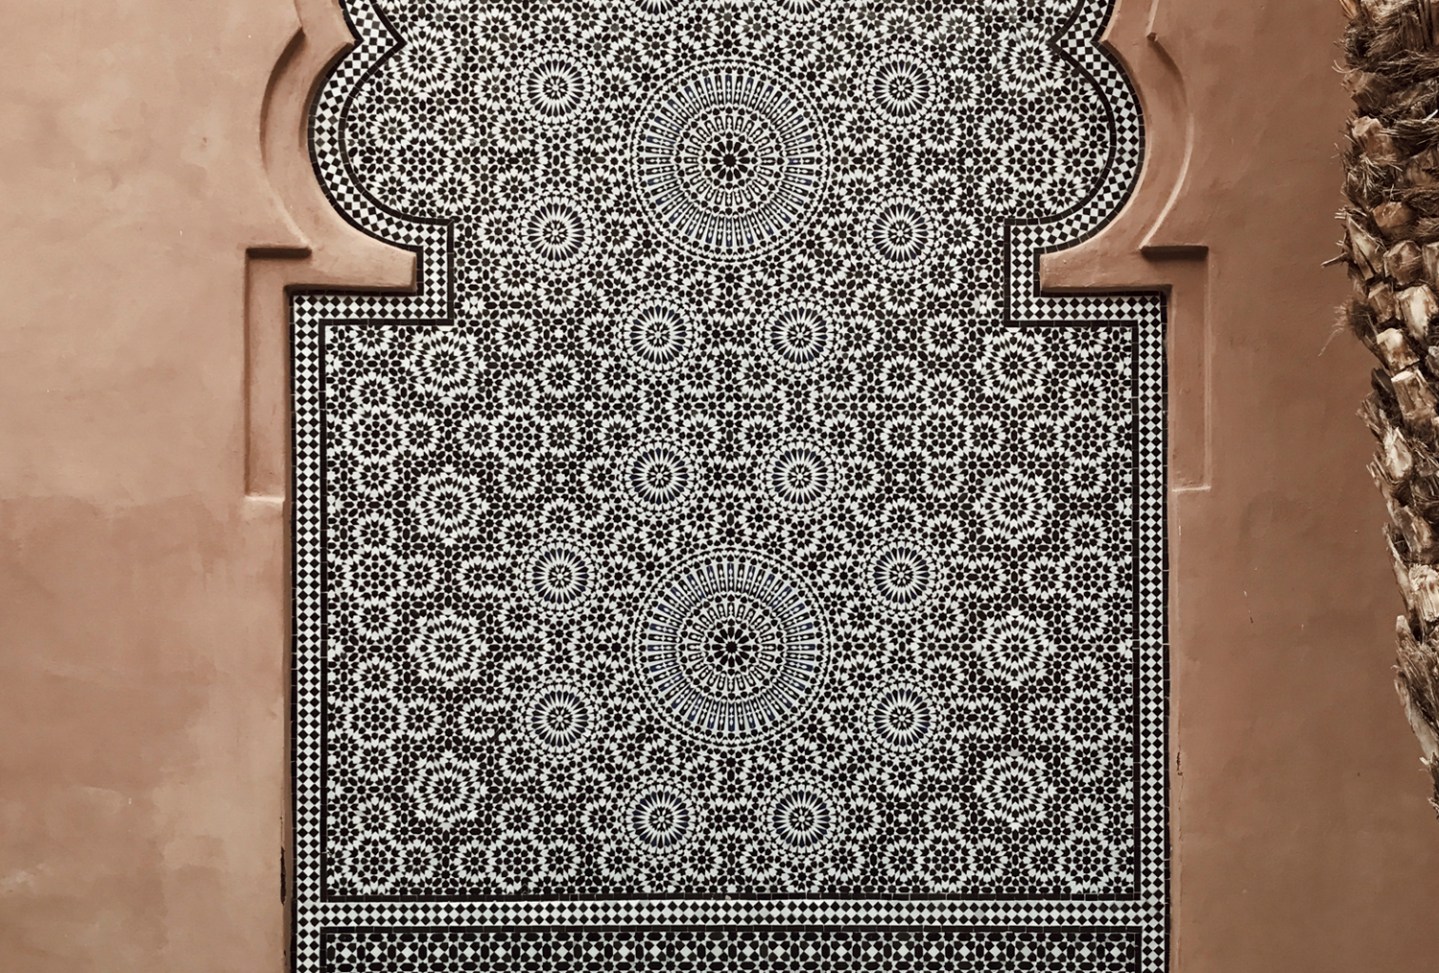 Mosaic Details in the Marrakech Medina © Instagram / @MrEssentialist